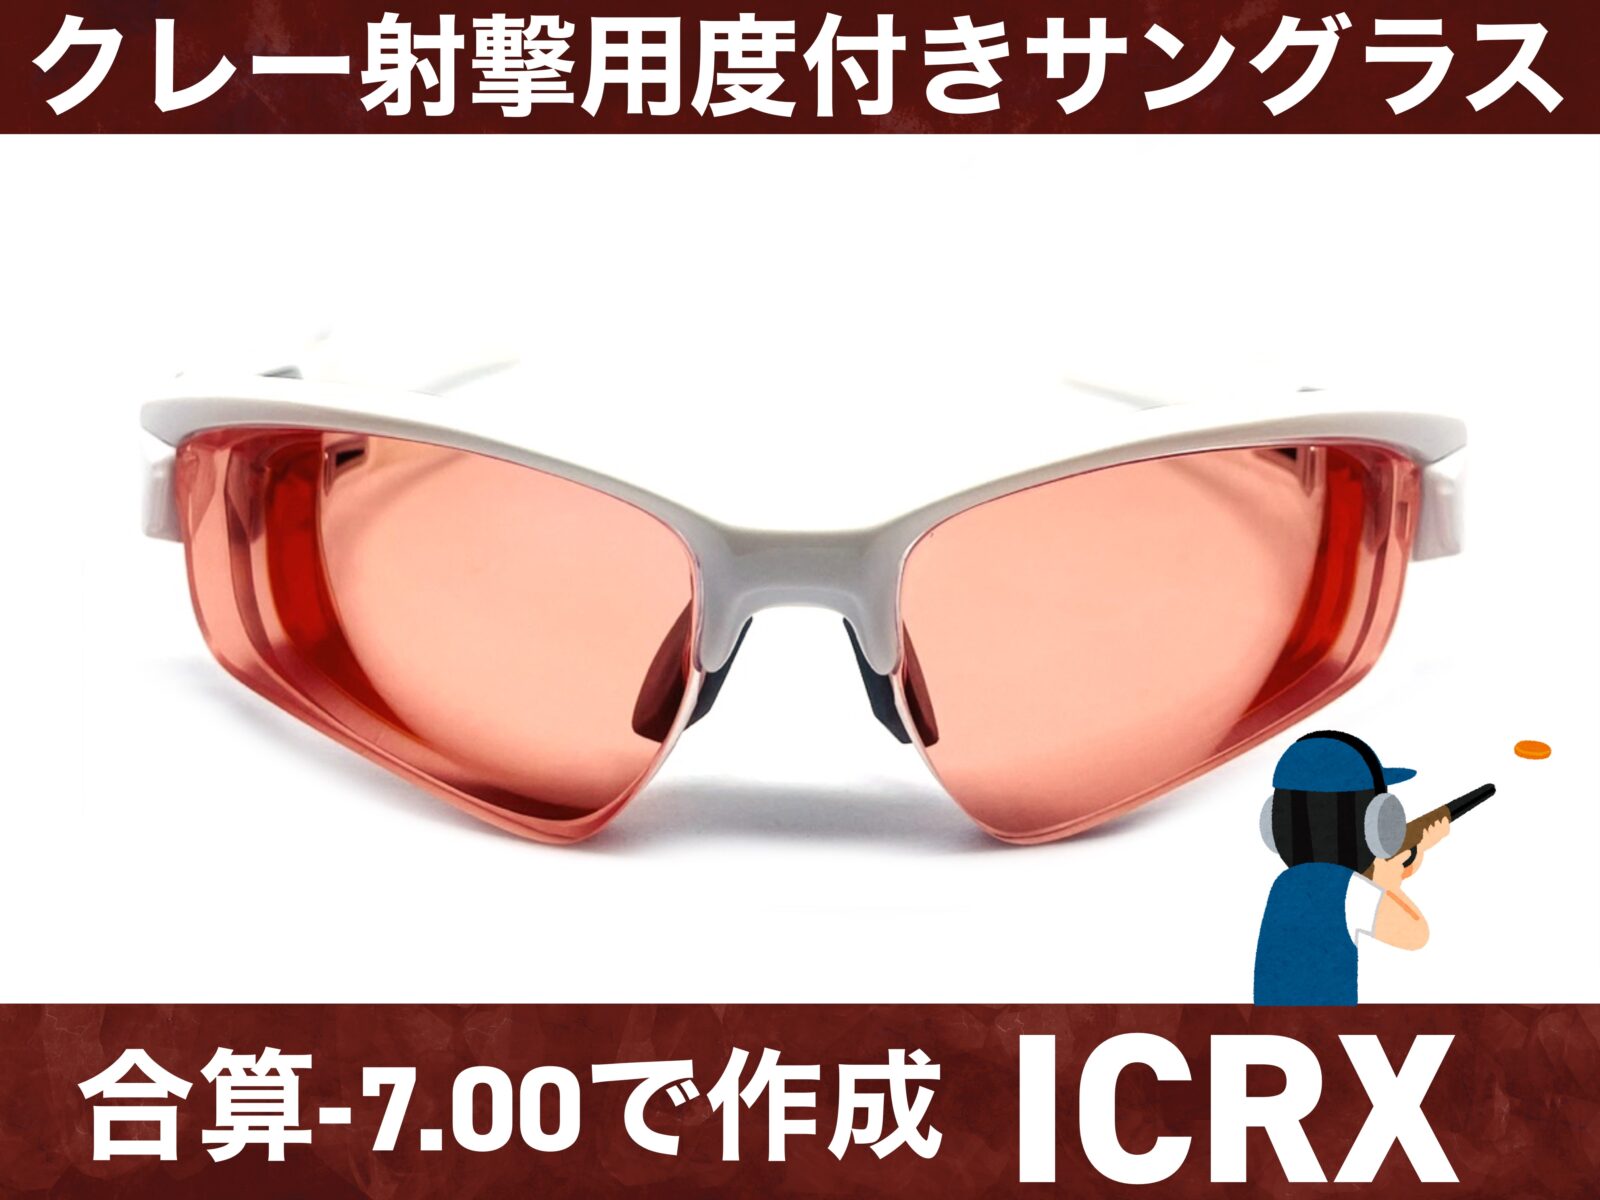 クレー射撃用度付きサングラス作成 – 名古屋栄のスポーツサングラス 